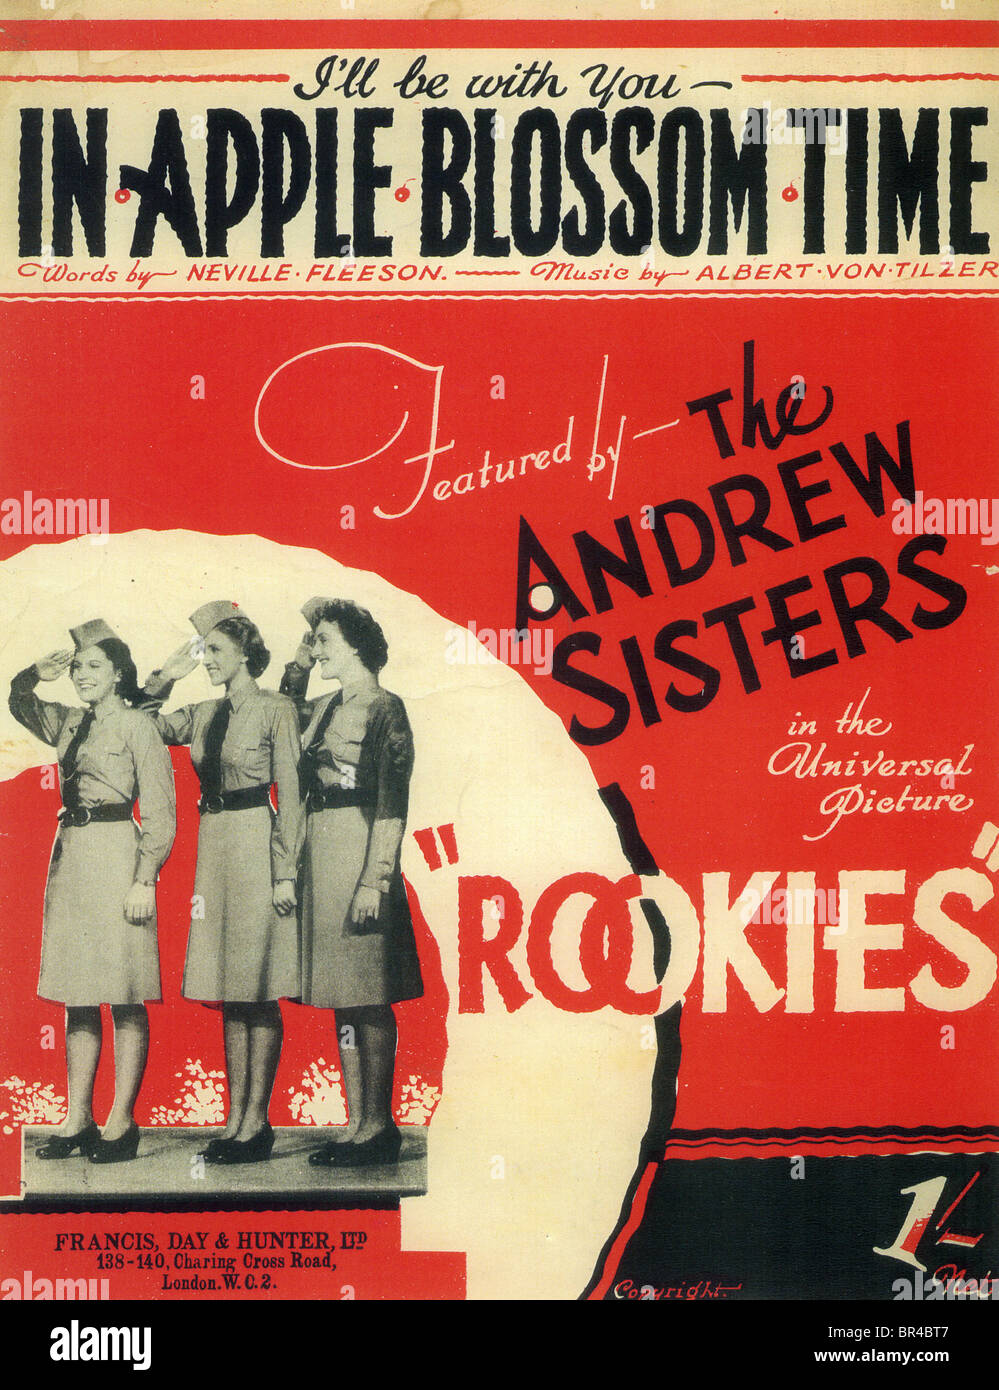 ROOKIES Noten für ein Lied von den Andrews Sisters aus ihrer universellen 1941 Stockfoto